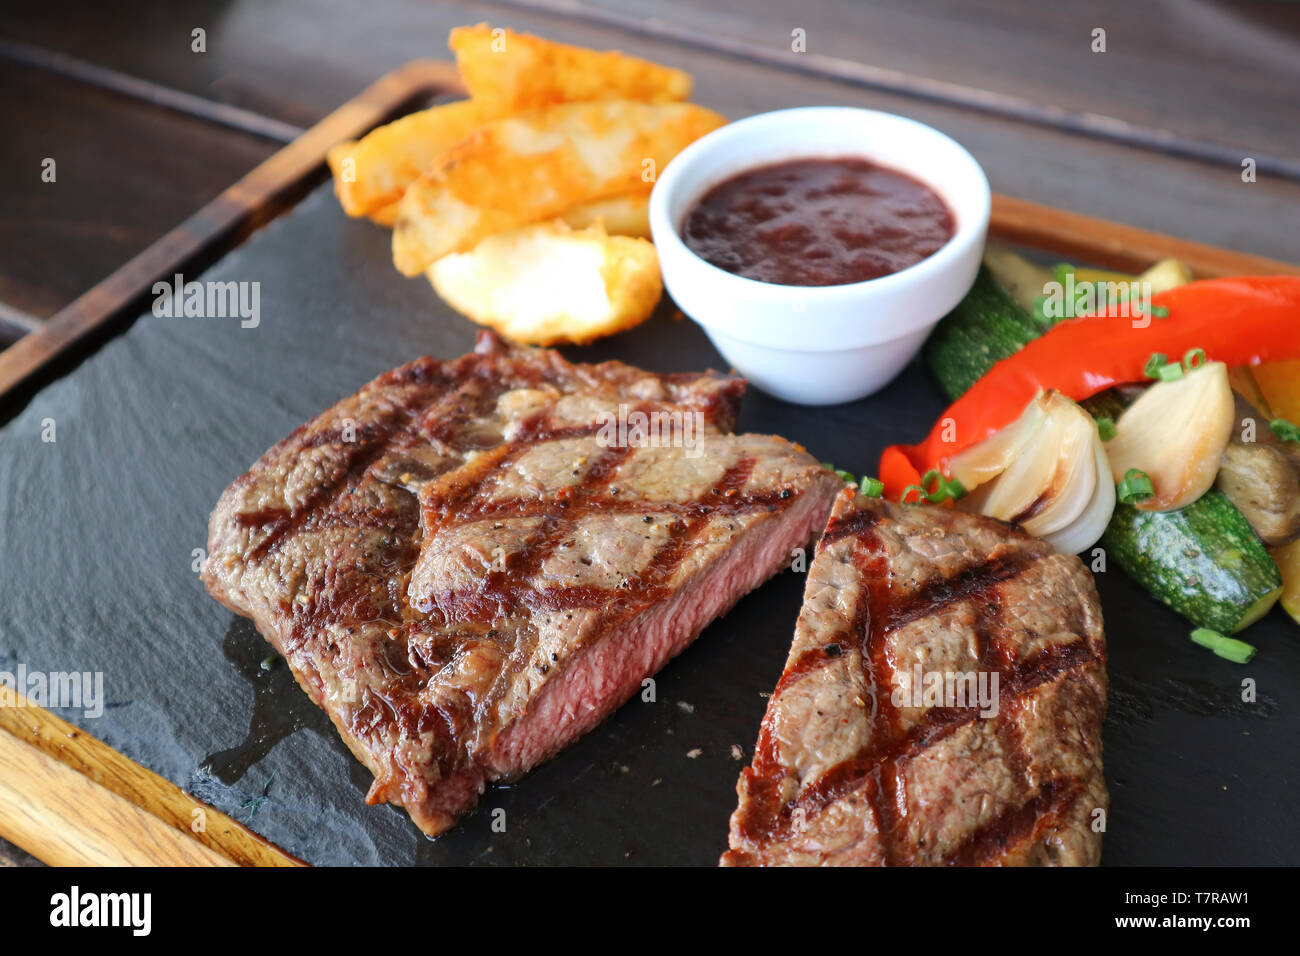 Cut steak grillé moyen ribeye avec sauce au vin rouge et faire sauter les légumes sur la plaque en pierre chaude Banque D'Images